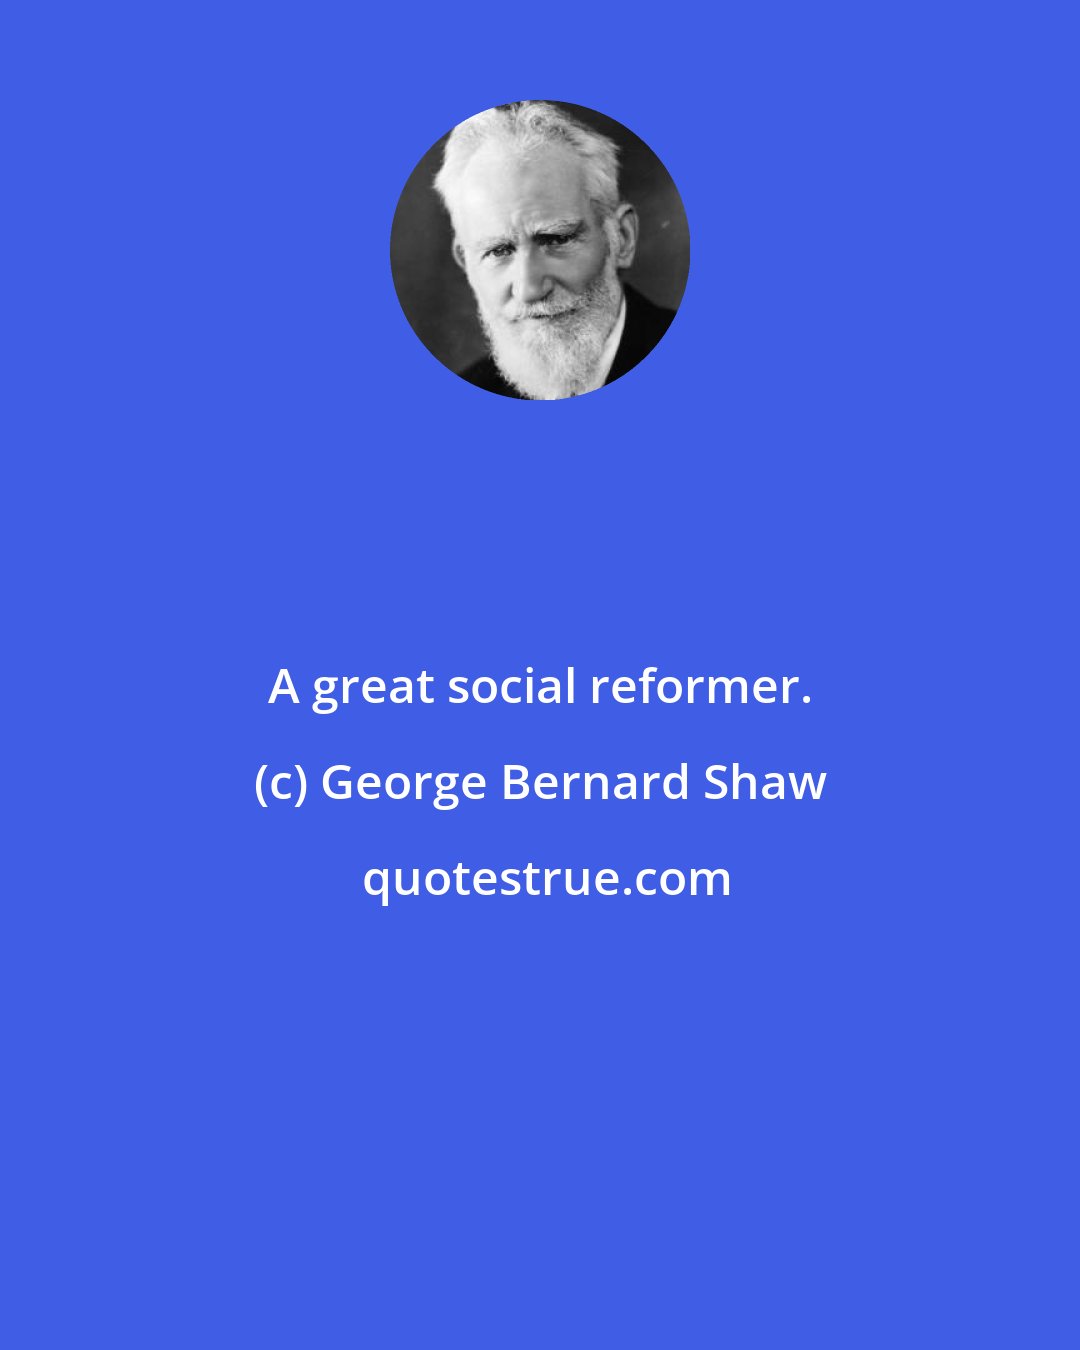 George Bernard Shaw: A great social reformer.